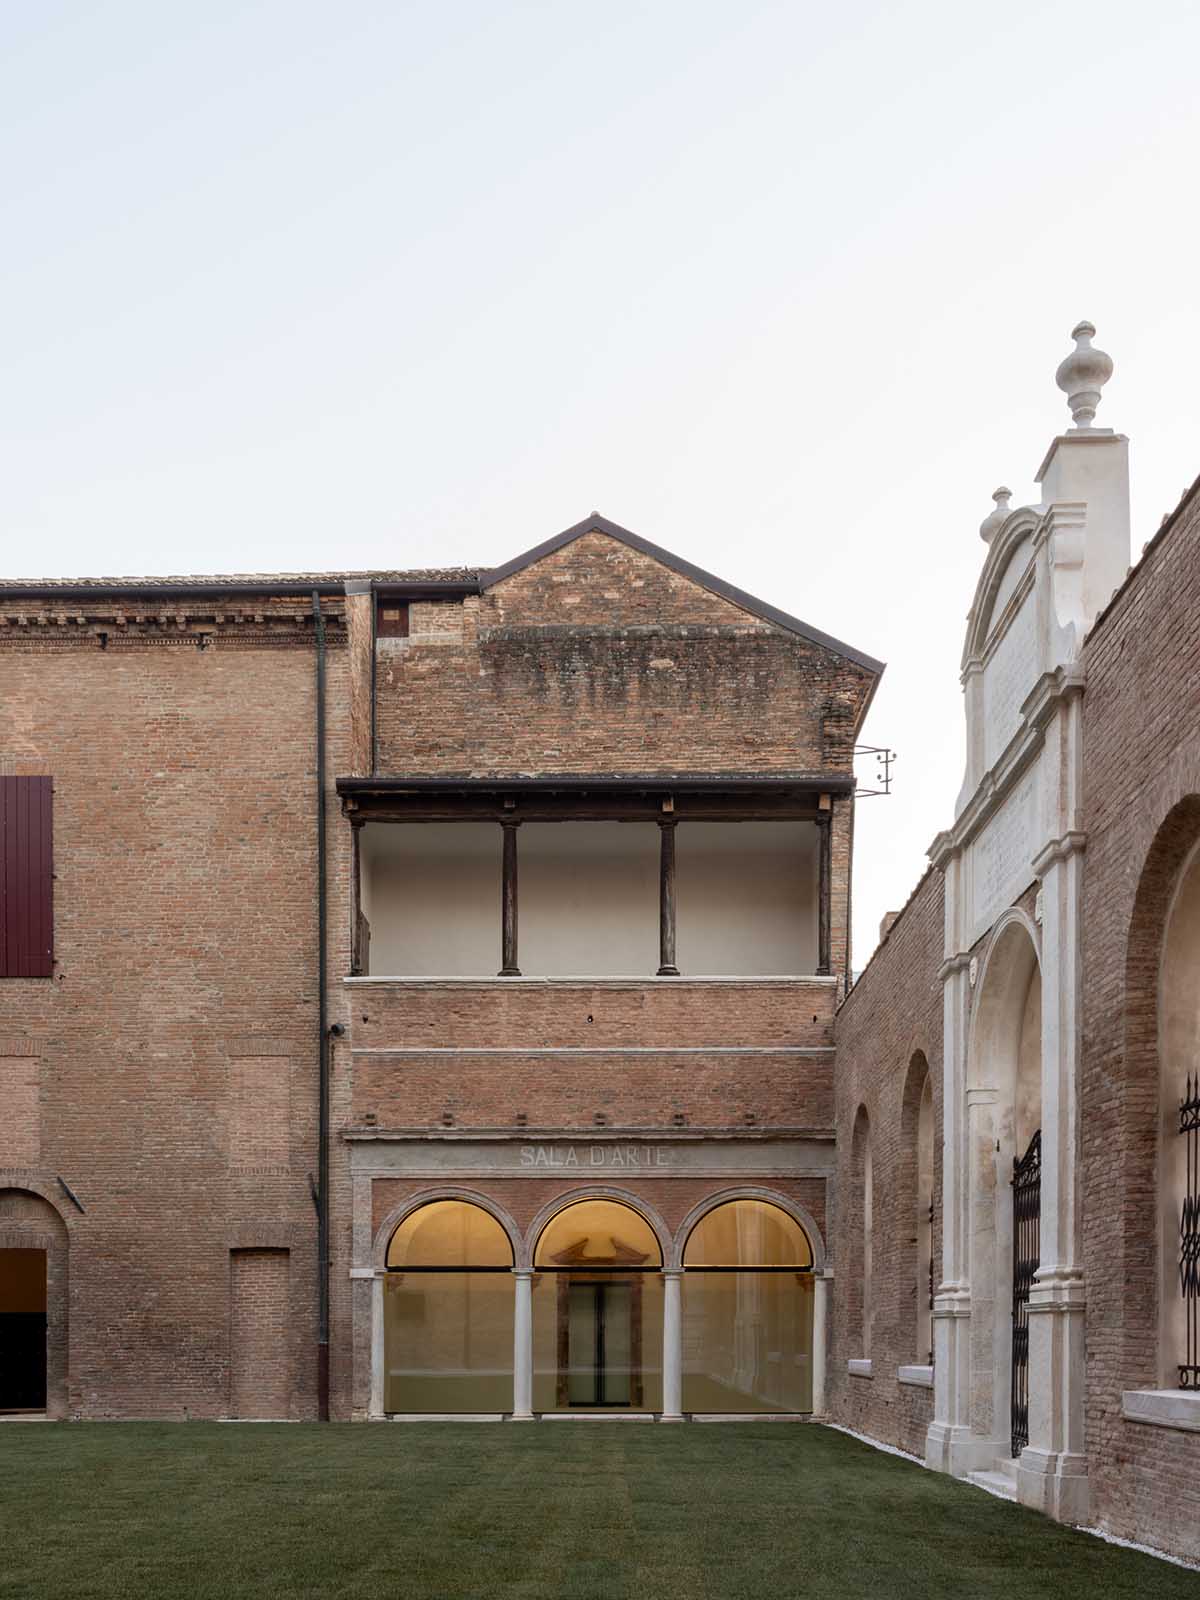 Labics completes renovation of the 16th-century complex Palazzo dei Diamanti in Ferrara, Italy